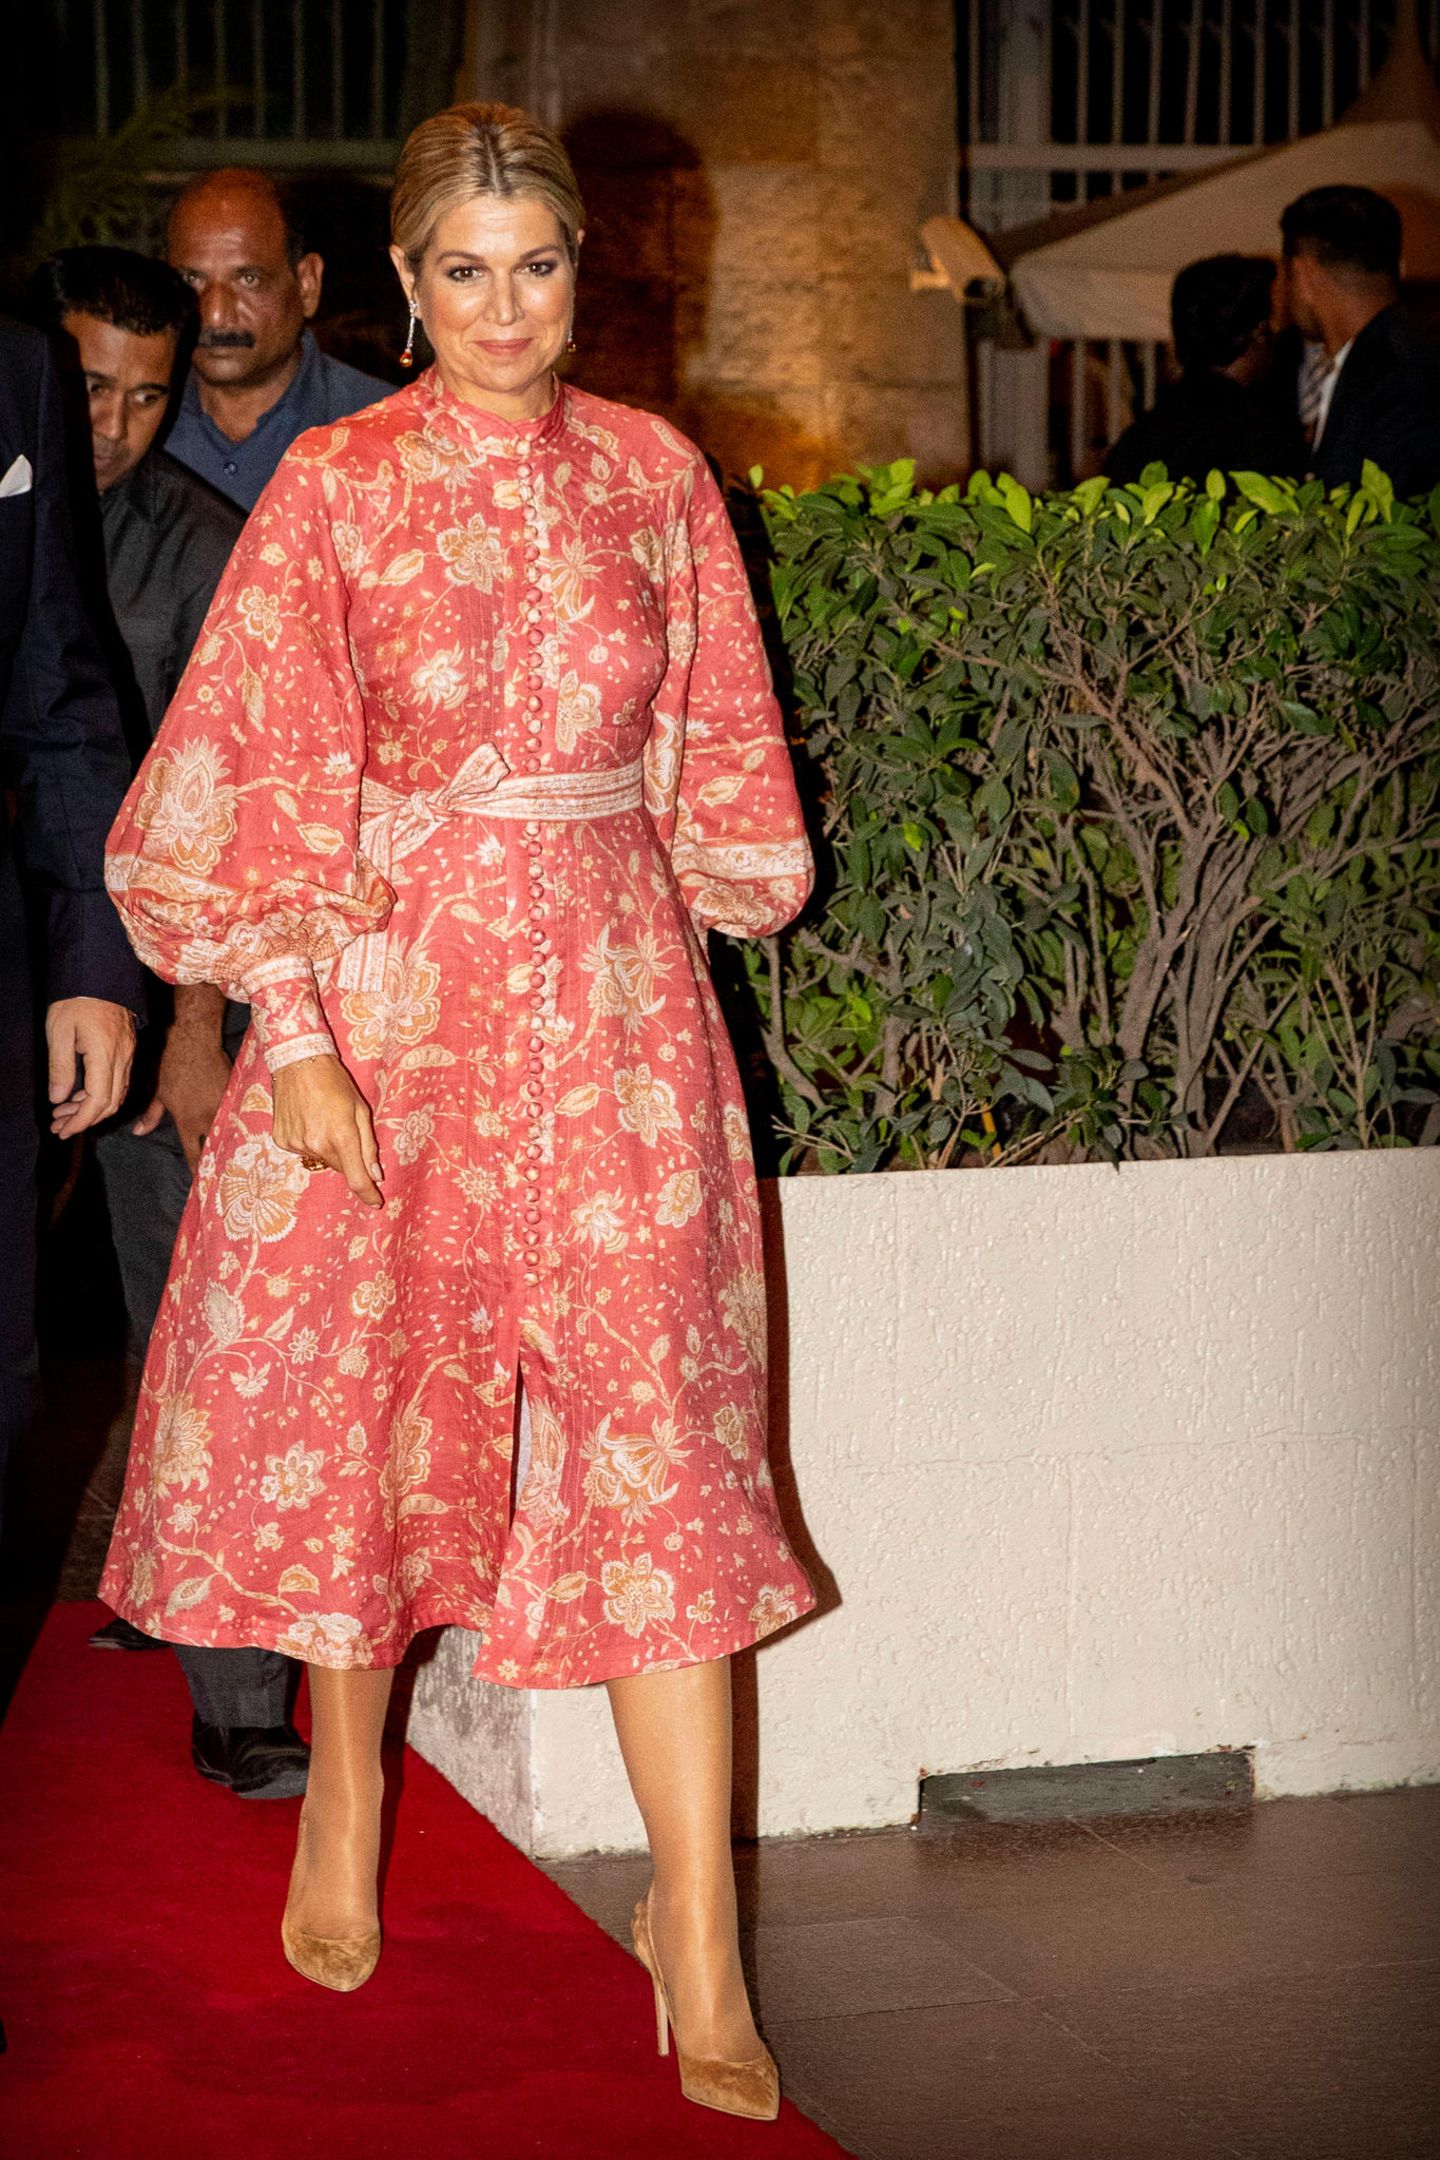 2019 während der Indonesien-Reise zusammen mit ihrem Mann, König Willem-Alexander, erschien Máxima ebenfalls in dem Hingucker-Kleid des Luxuslabels. Ein tiefsitzender Chignon und Ohrringe in Tropfenform komplettieren den Look perfekt. 